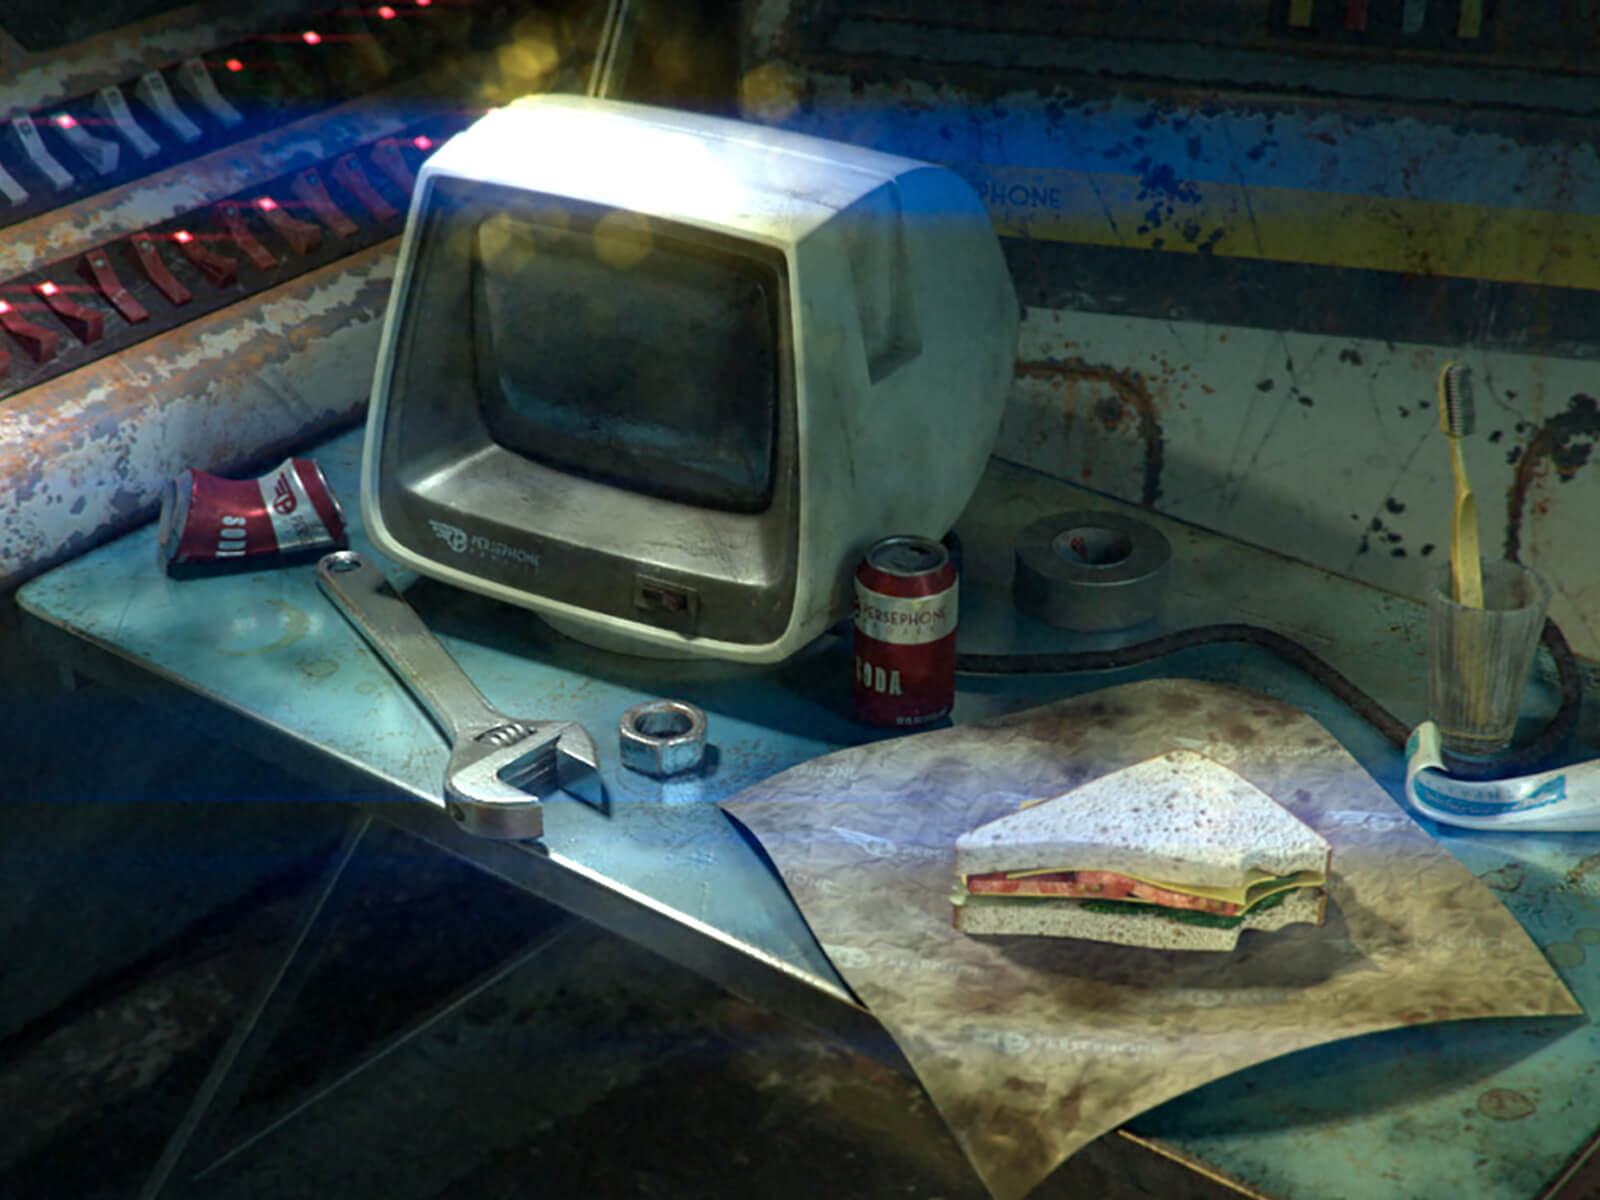 Un monitor de computadora anticuado se encuentra en una desordenada mesa desplegable azul con una llave inglesa, un cepillo de dientes y un sándwich a medio comer.